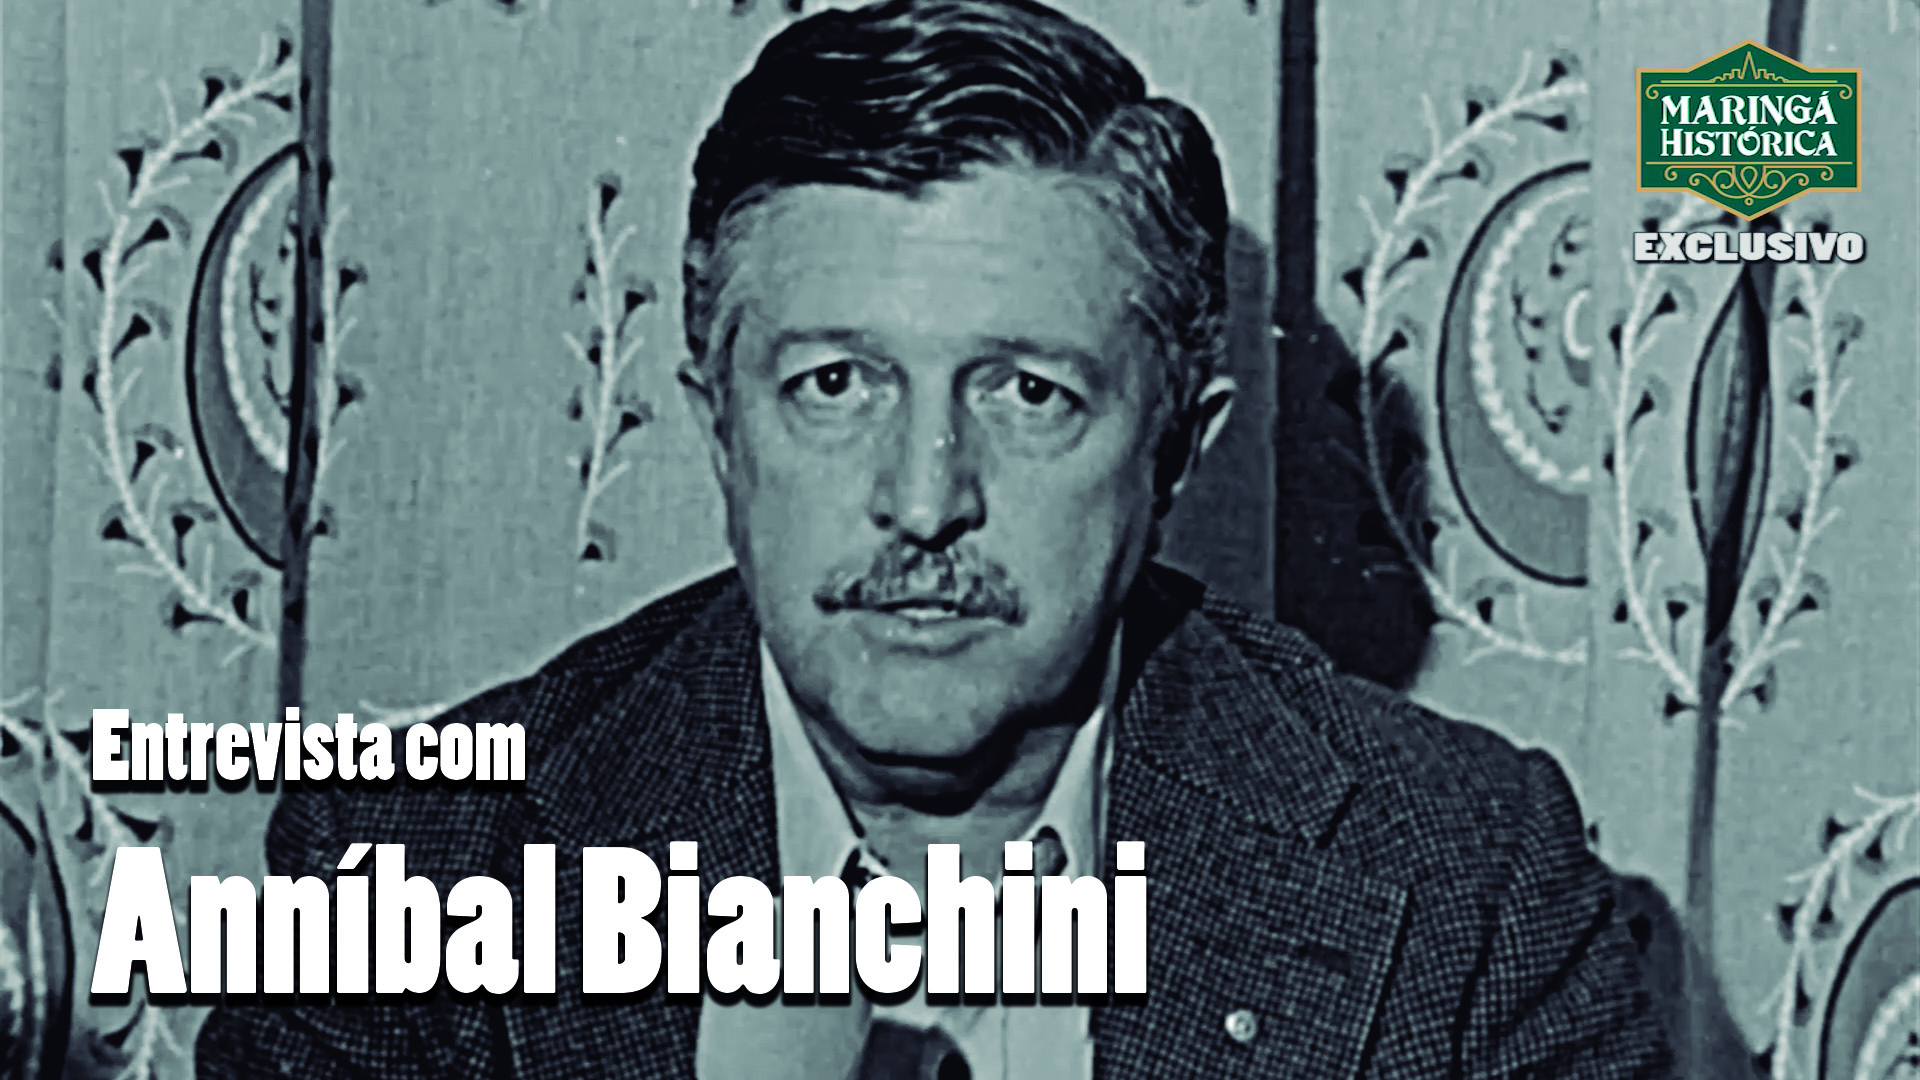 RARIDADE - Entrevista com Anníbal Bianchini da Rocha em 1978